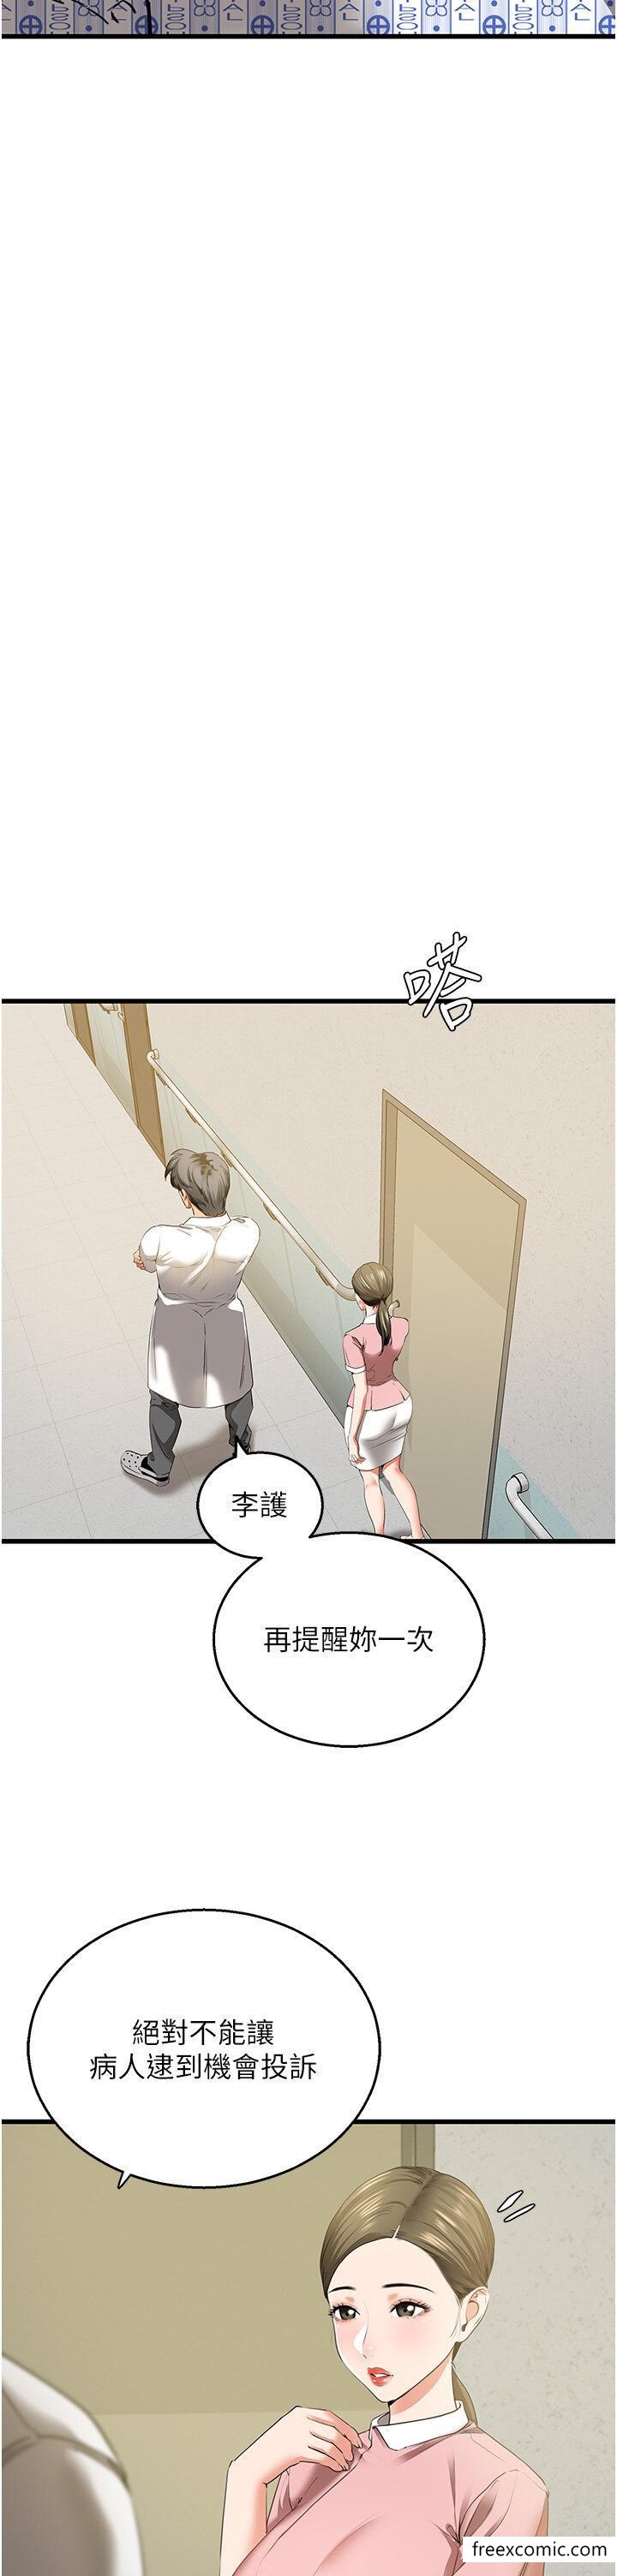 韩国漫画地表最屌卧底干员韩漫_地表最屌卧底干员-第5话-适合撩妹的发春期在线免费阅读-韩国漫画-第31张图片